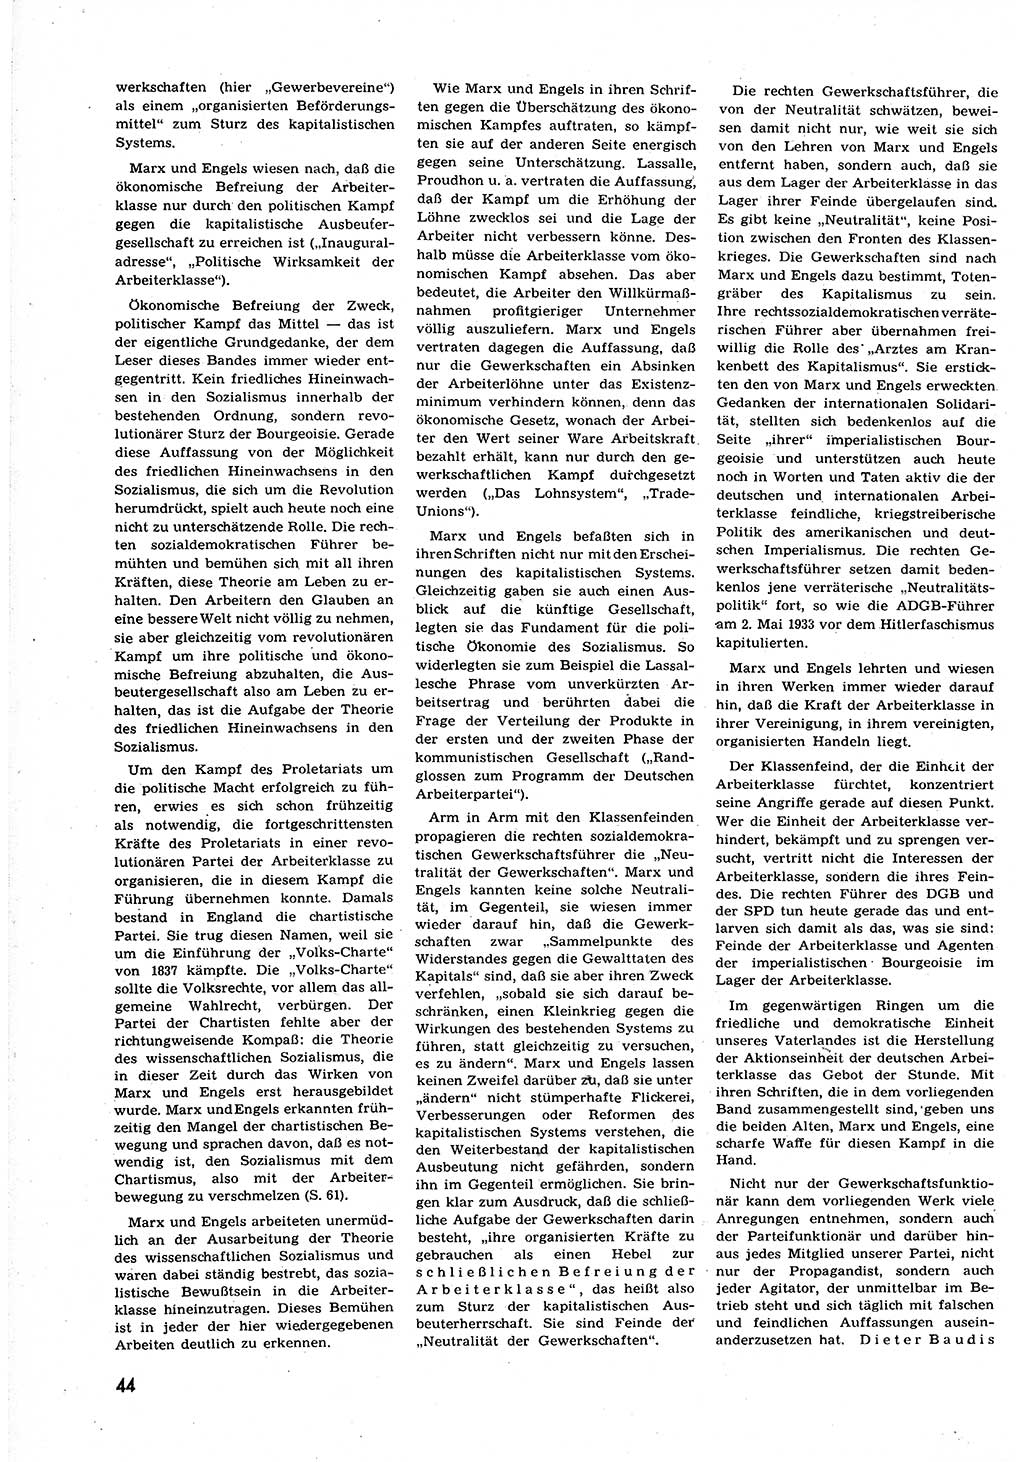 Neuer Weg (NW), Organ des Zentralkomitees (ZK) der SED (Sozialistische Einheitspartei Deutschlands) für alle Parteiarbeiter, 9. Jahrgang [Deutsche Demokratische Republik (DDR)] 1954, Heft 9/44 (NW ZK SED DDR 1954, H. 9/44)